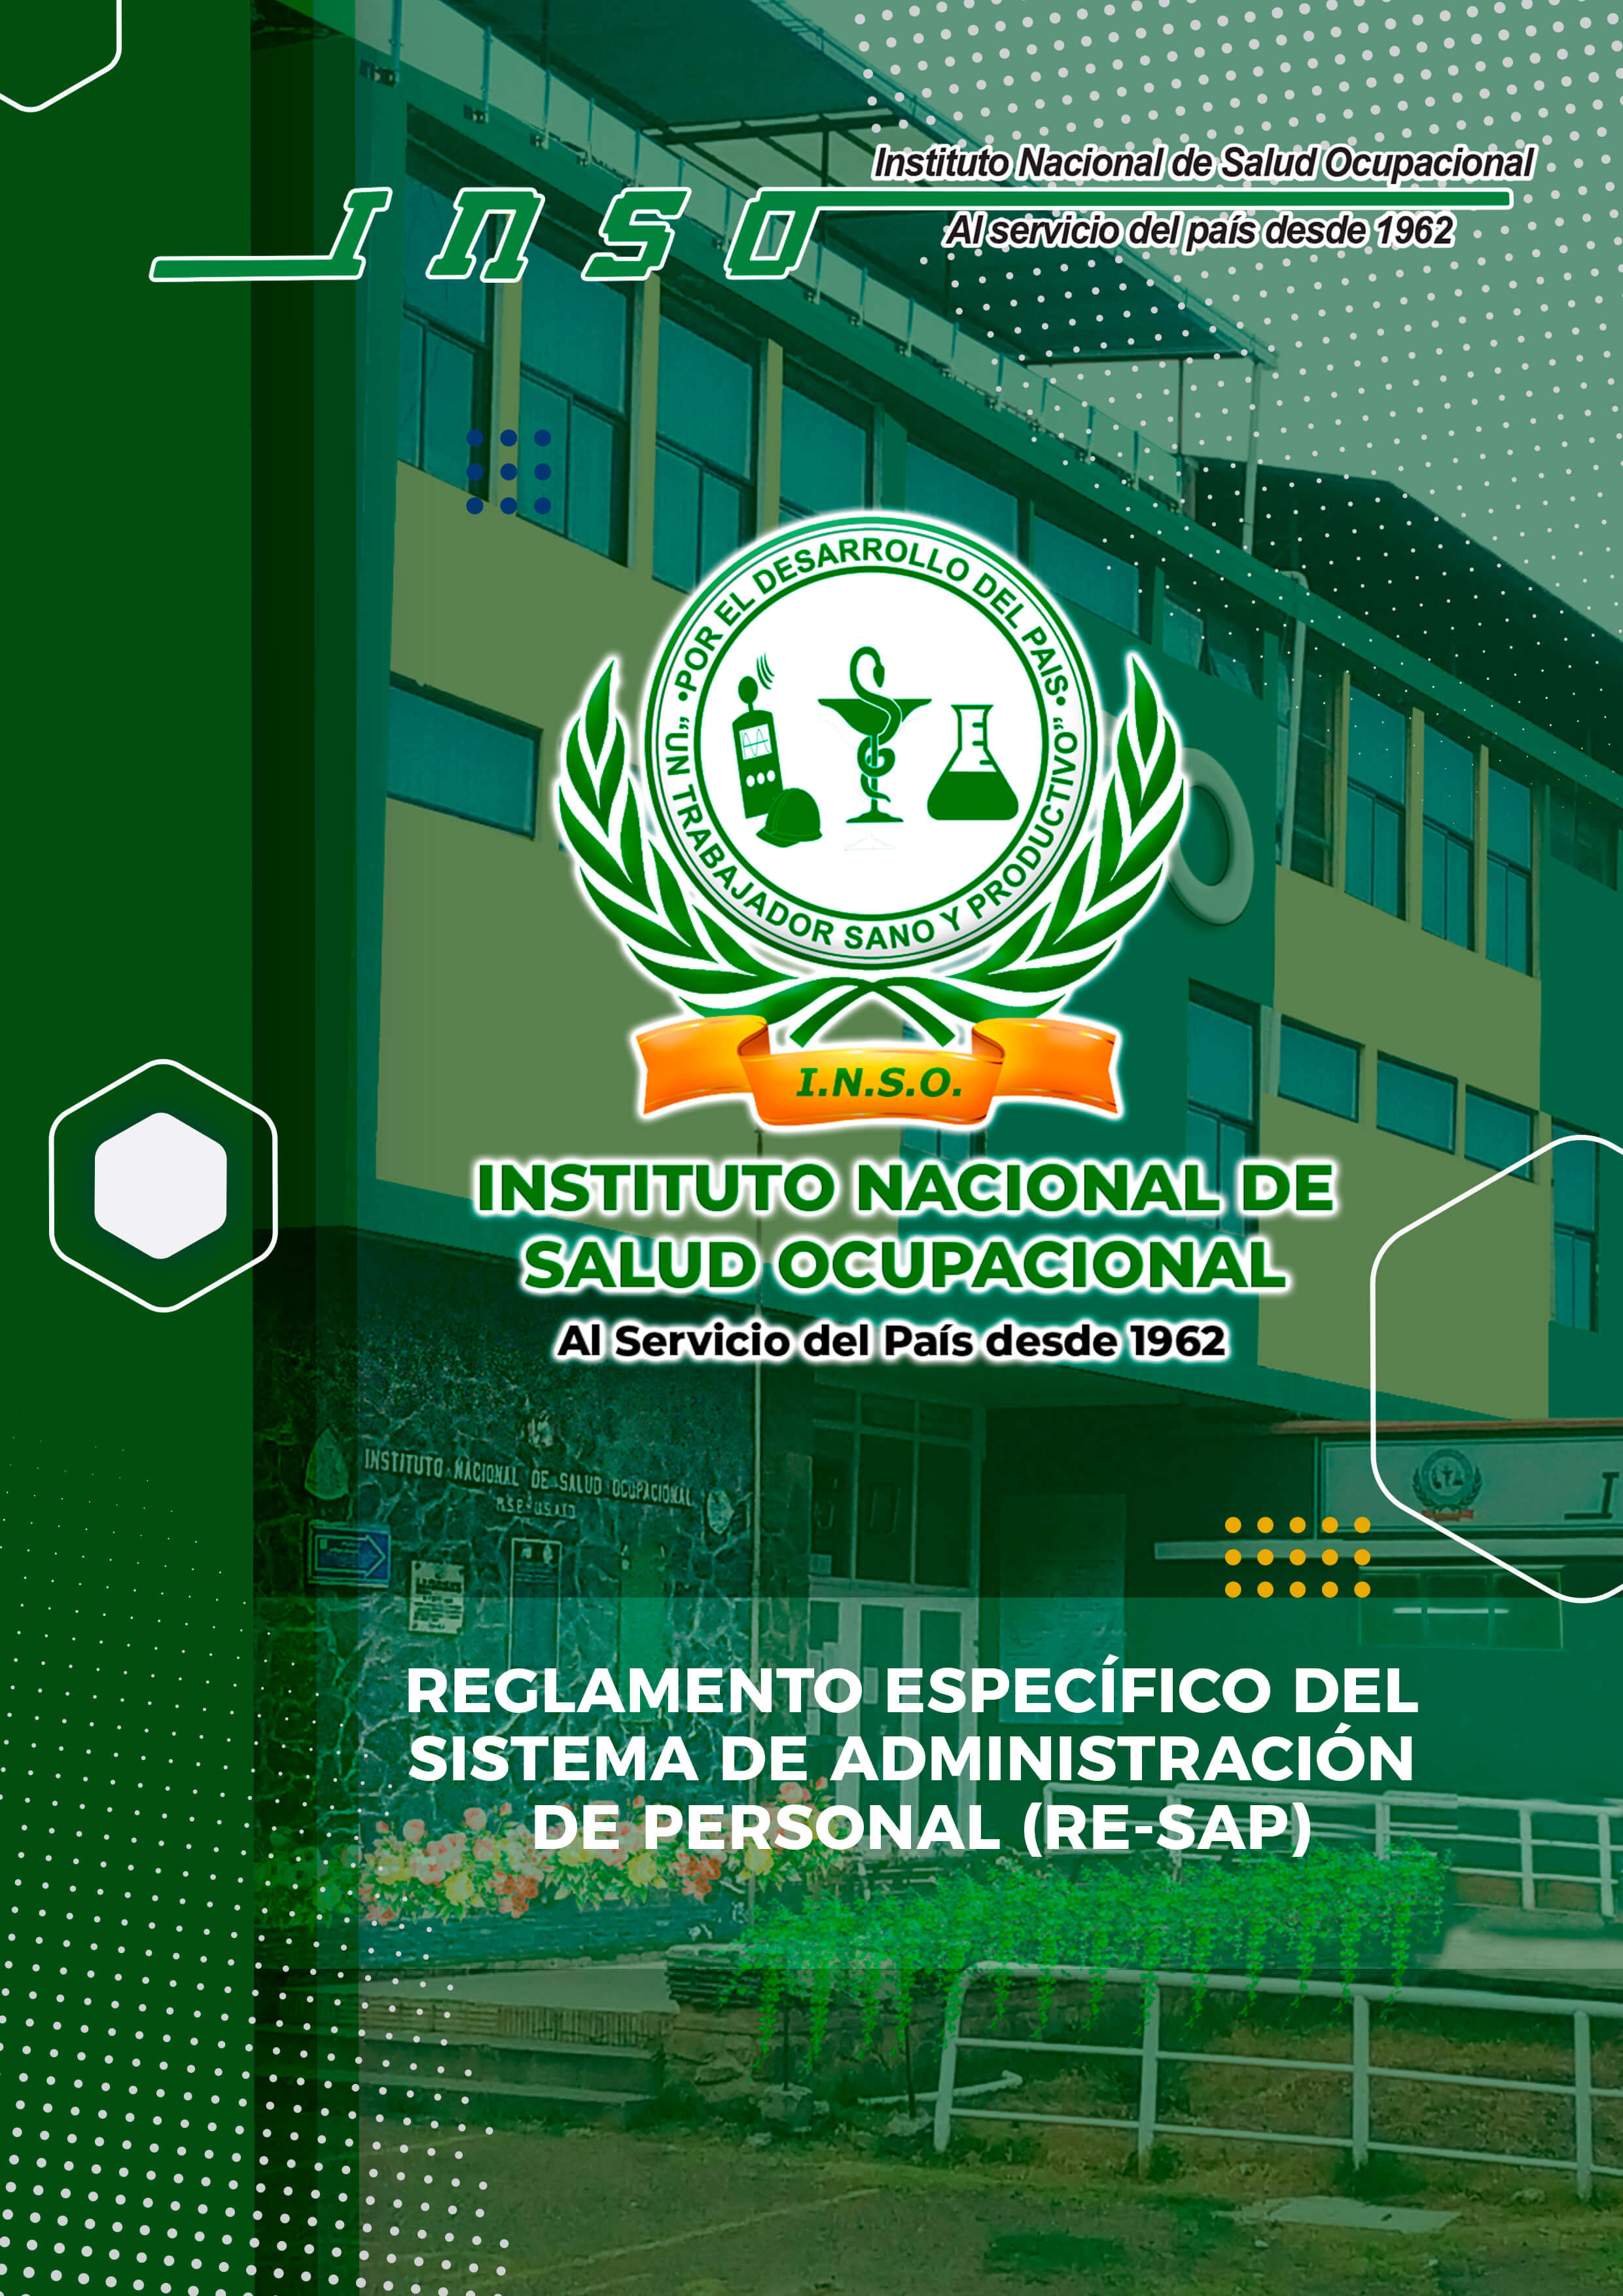 REGLAMENTO ESPECIFICO DEL SISTEMA DE ADMINISTRACION DE PERSONAL (RE-SAP)